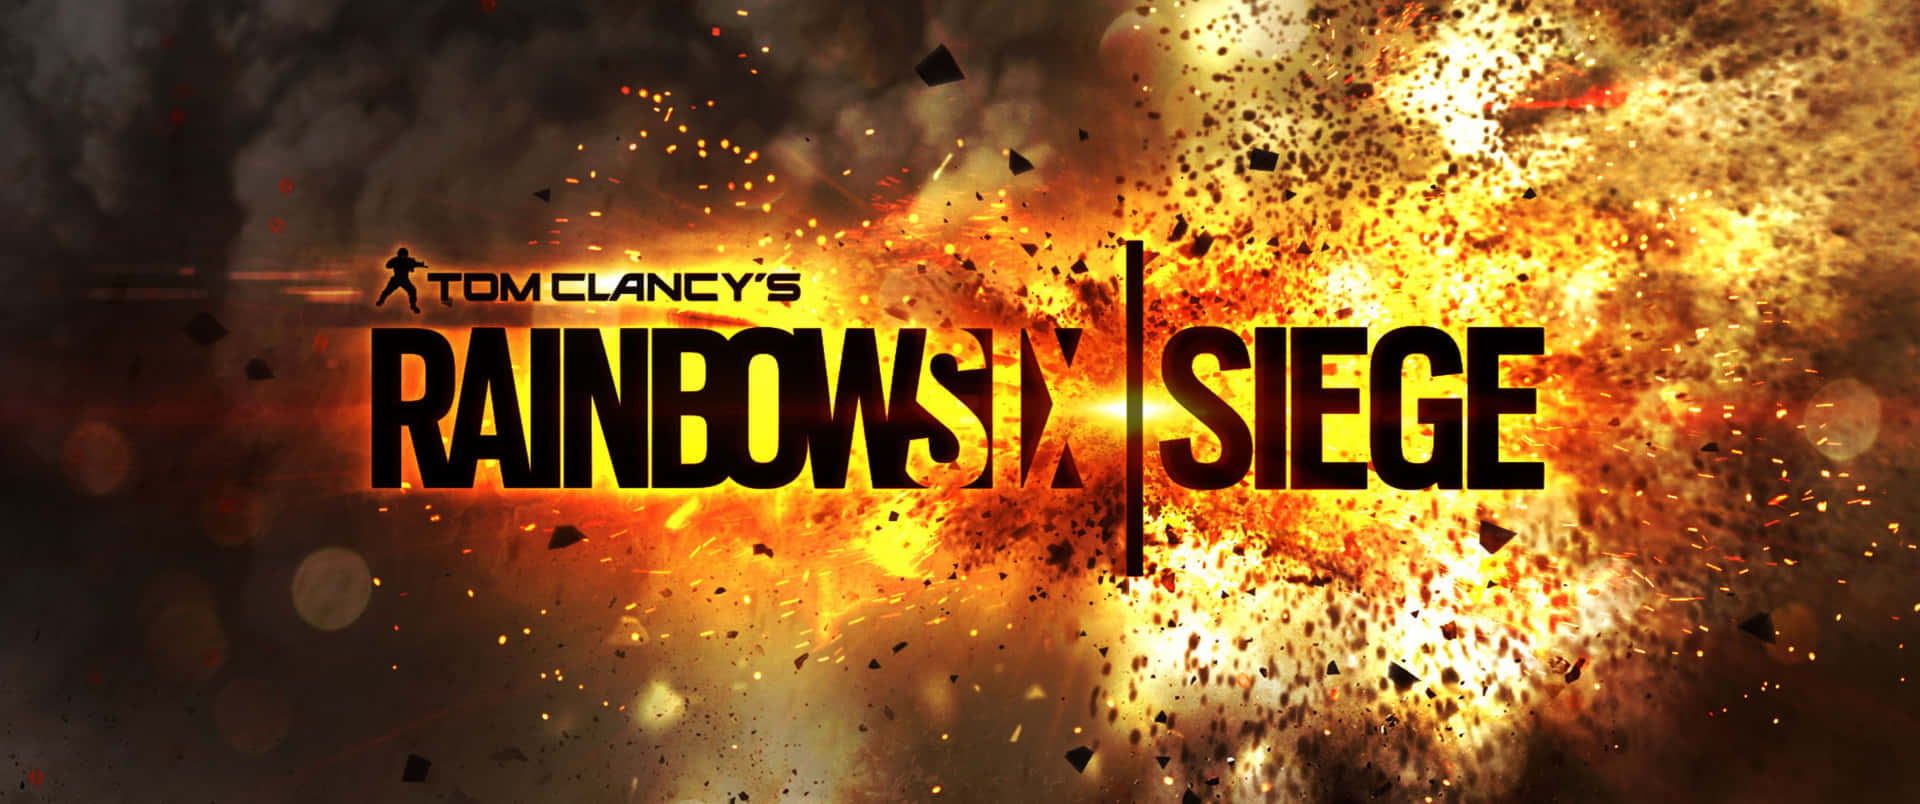 Combattiil Nemico In Rainbow Six Siege Con Una Risoluzione Di 3440x1440p.